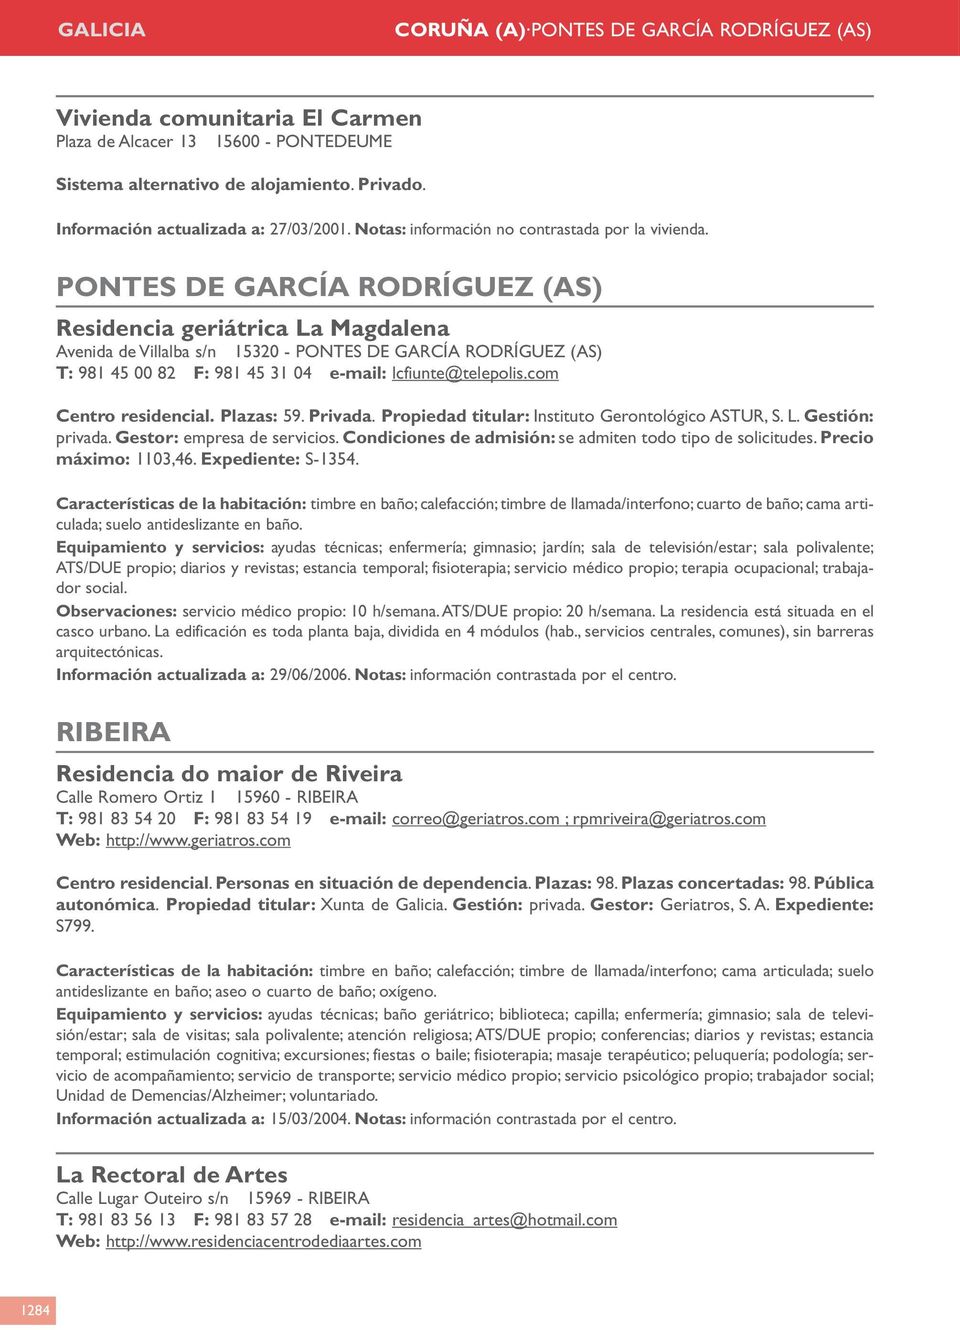 PONTES DE GARCÍA RODRÍGUEZ (AS) Residencia geriátrica La Magdalena Avenida de Villalba s/n 15320 - PONTES DE GARCÍA RODRÍGUEZ (AS) T: 981 45 00 82 F: 981 45 31 04 e-mail: lcfiunte@telepolis.